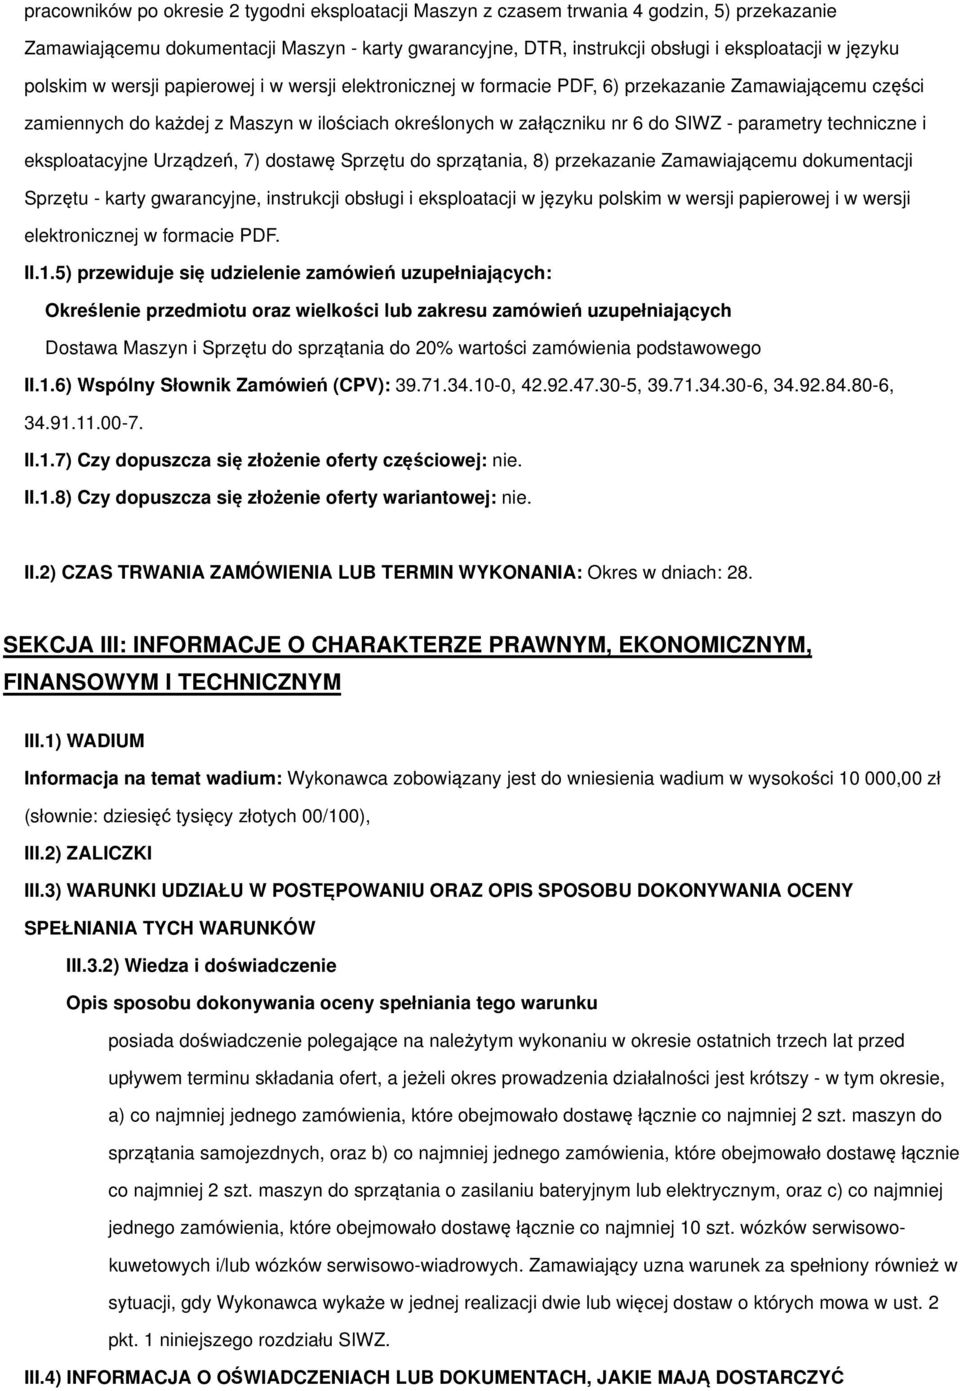 techniczne i eksploatacyjne Urządzeń, 7) dostawę Sprzętu do sprzątania, 8) przekazanie Zamawiającemu dokumentacji Sprzętu - karty gwarancyjne, instrukcji obsługi i eksploatacji w języku polskim w